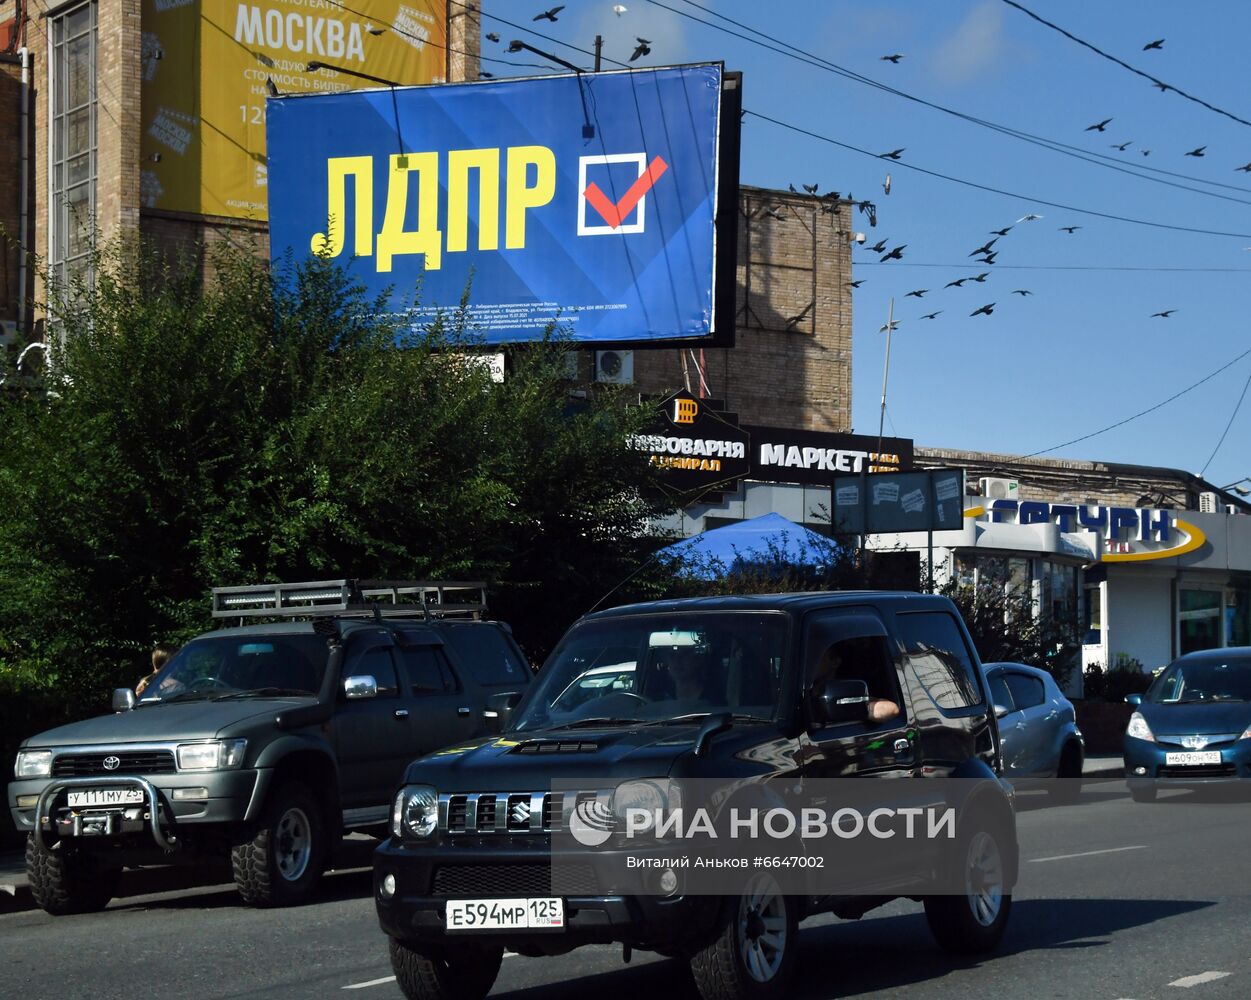 Предвыборная агитация во Владивостоке